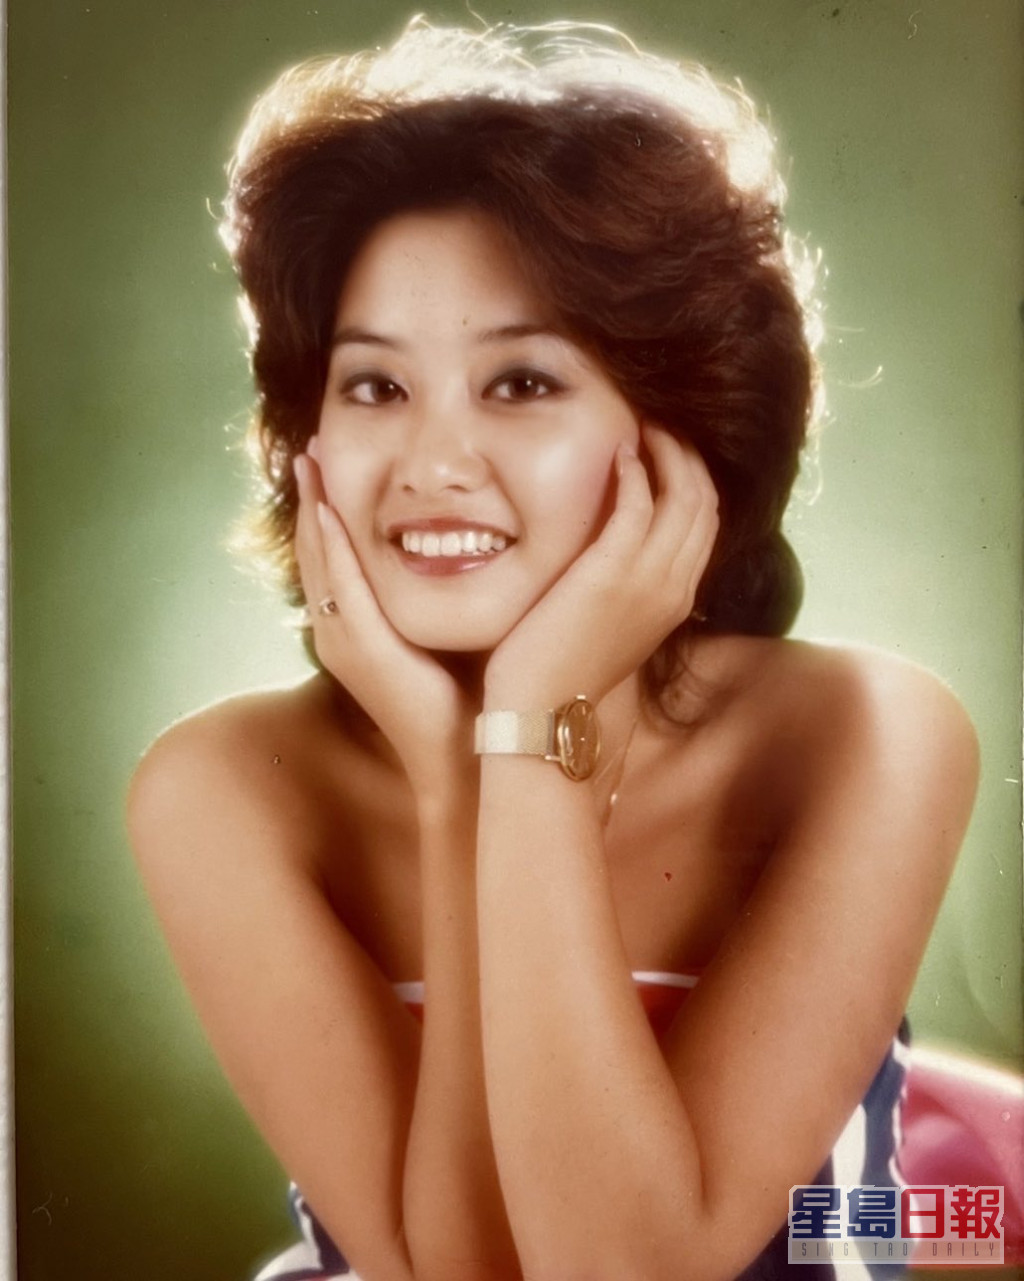 到1990年代，锺慧冰与同居多年的男友结婚，并于1996年诞下林静莉，而她当时亦半退出娱乐圈转战商界做女强人。